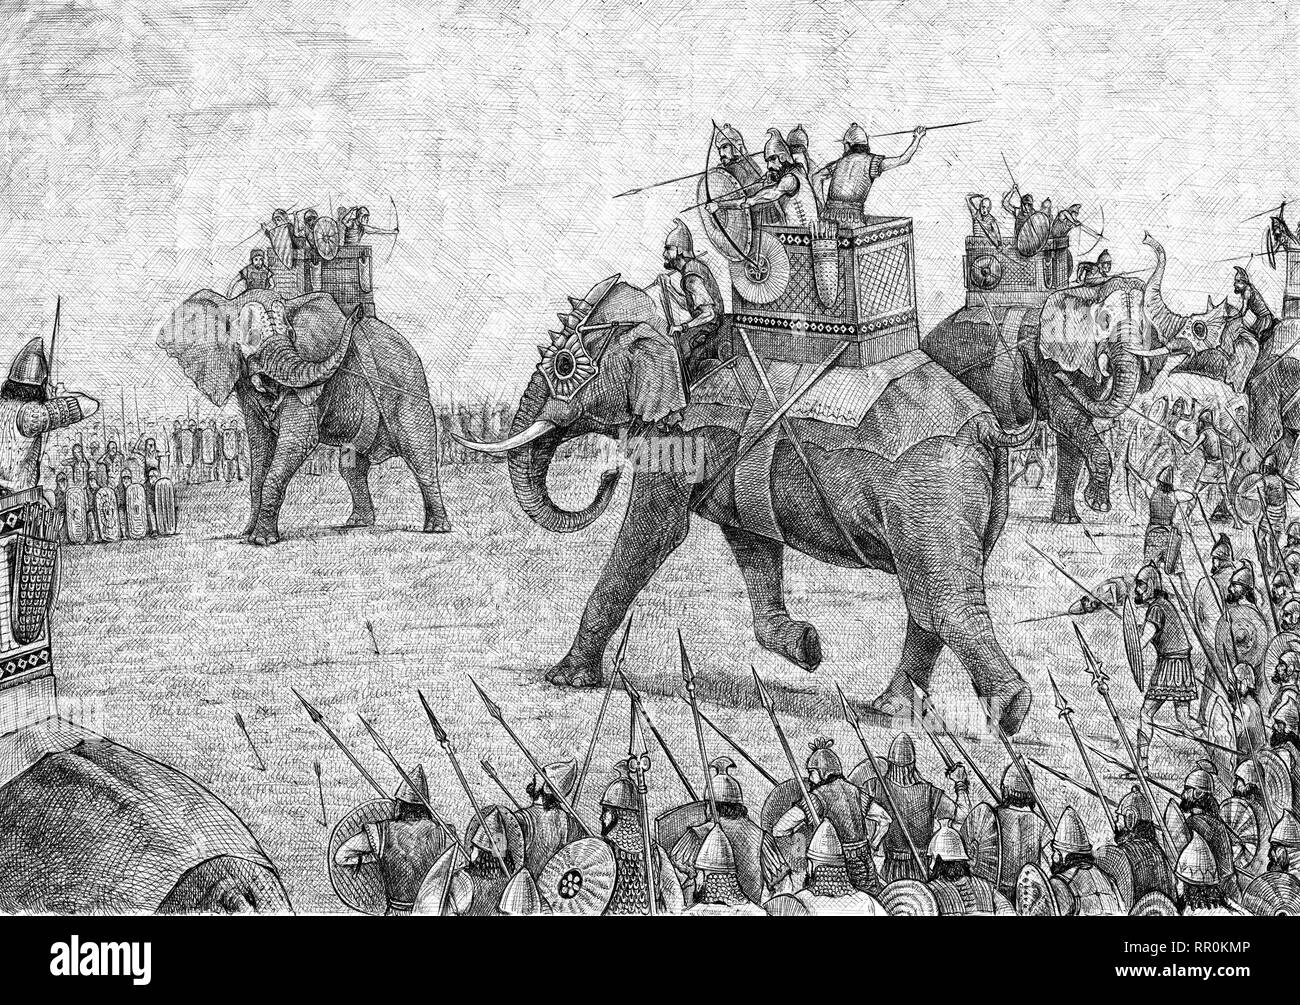 Kriegselefant Illustration, Armee von Karthago. Alte Schlacht Zeichnung. Stockfoto